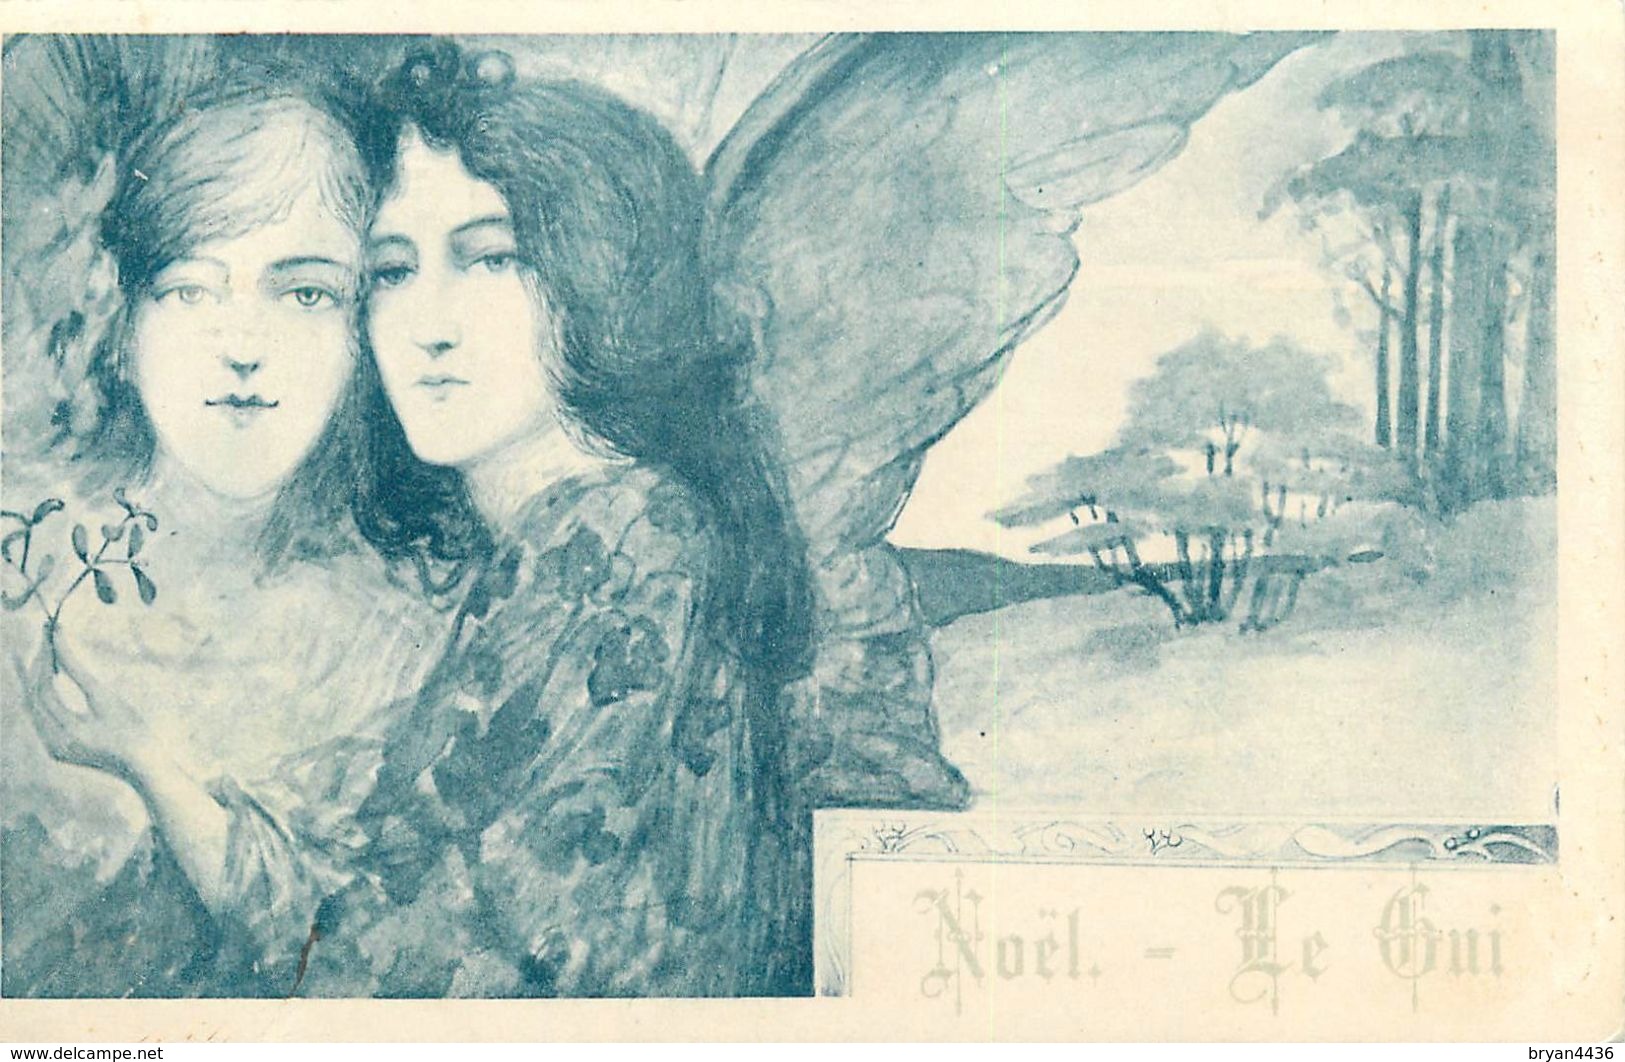 JEUNES FEMMES  - "NOËL - LE GUI " - CPA PRECURSEUR ILLUSTRATEUR ART NOUVEAU  - CIRCULEE EN 1900 - Très Bel état - Kirchner, Raphael